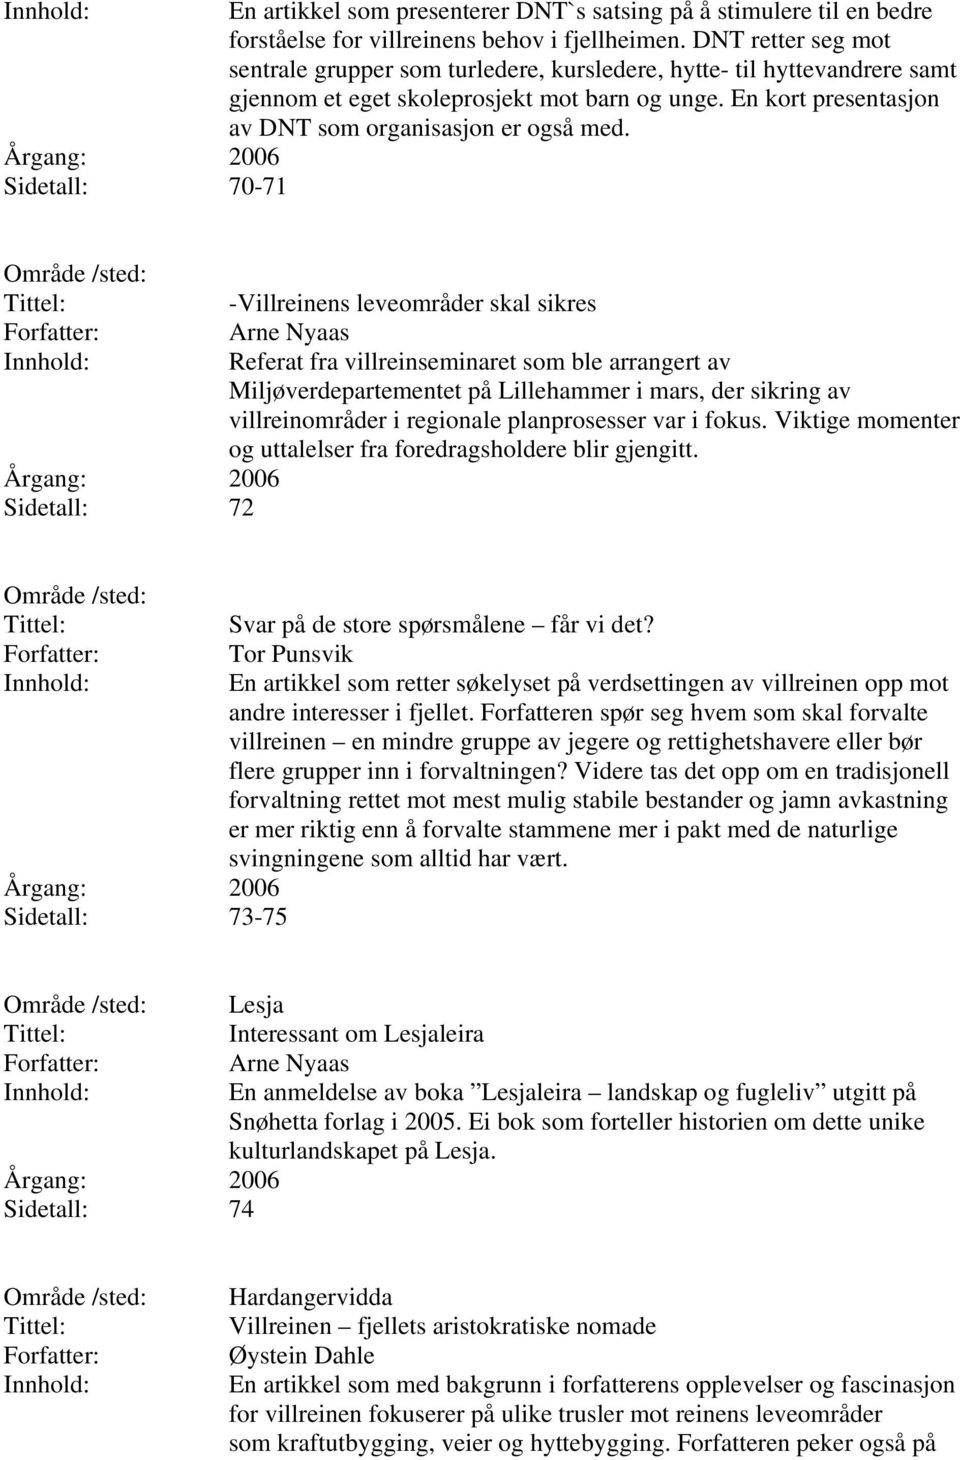 Sidetall: 70-71 Sidetall: 72 -Villreinens leveområder skal sikres Referat fra villreinseminaret som ble arrangert av Miljøverdepartementet på Lillehammer i mars, der sikring av villreinområder i